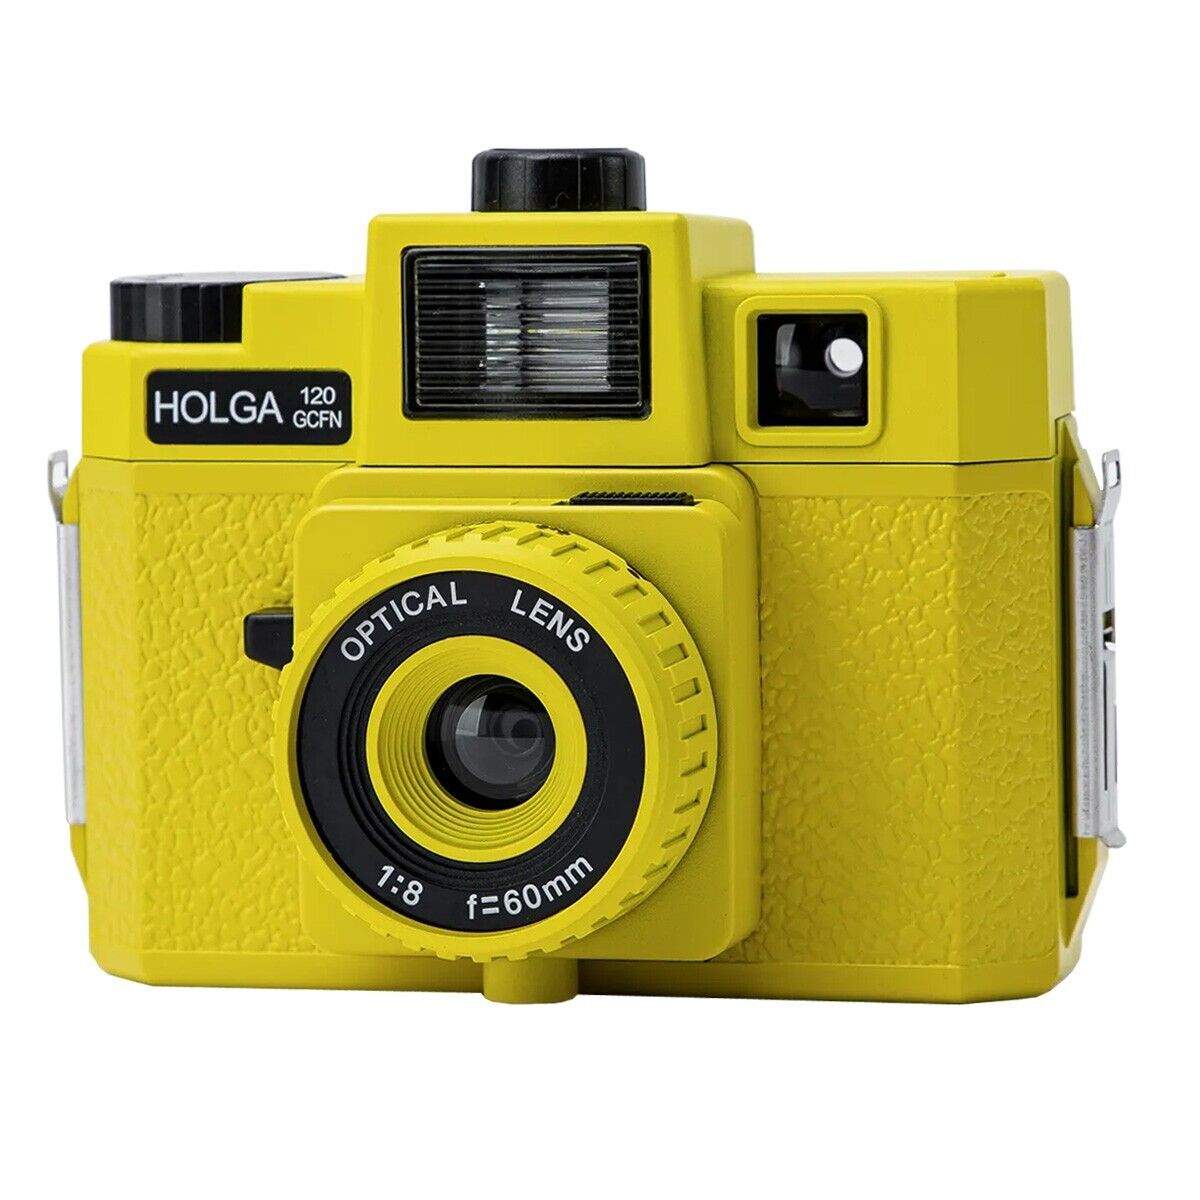 HOLGA 120GCFN Yellow Film Camera